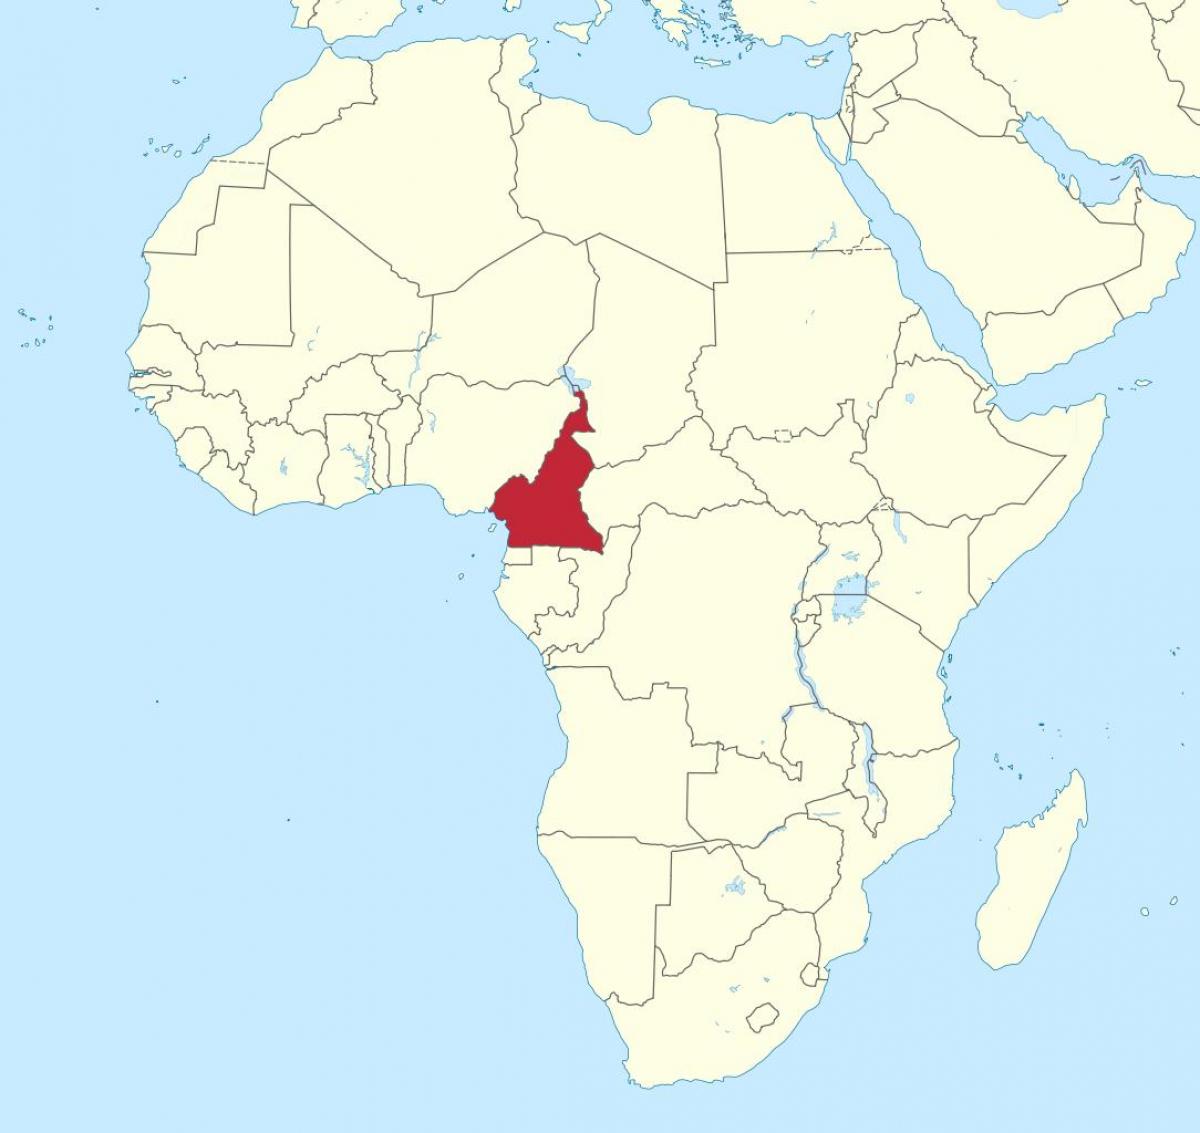 Kaart van Kameroen wes-afrika